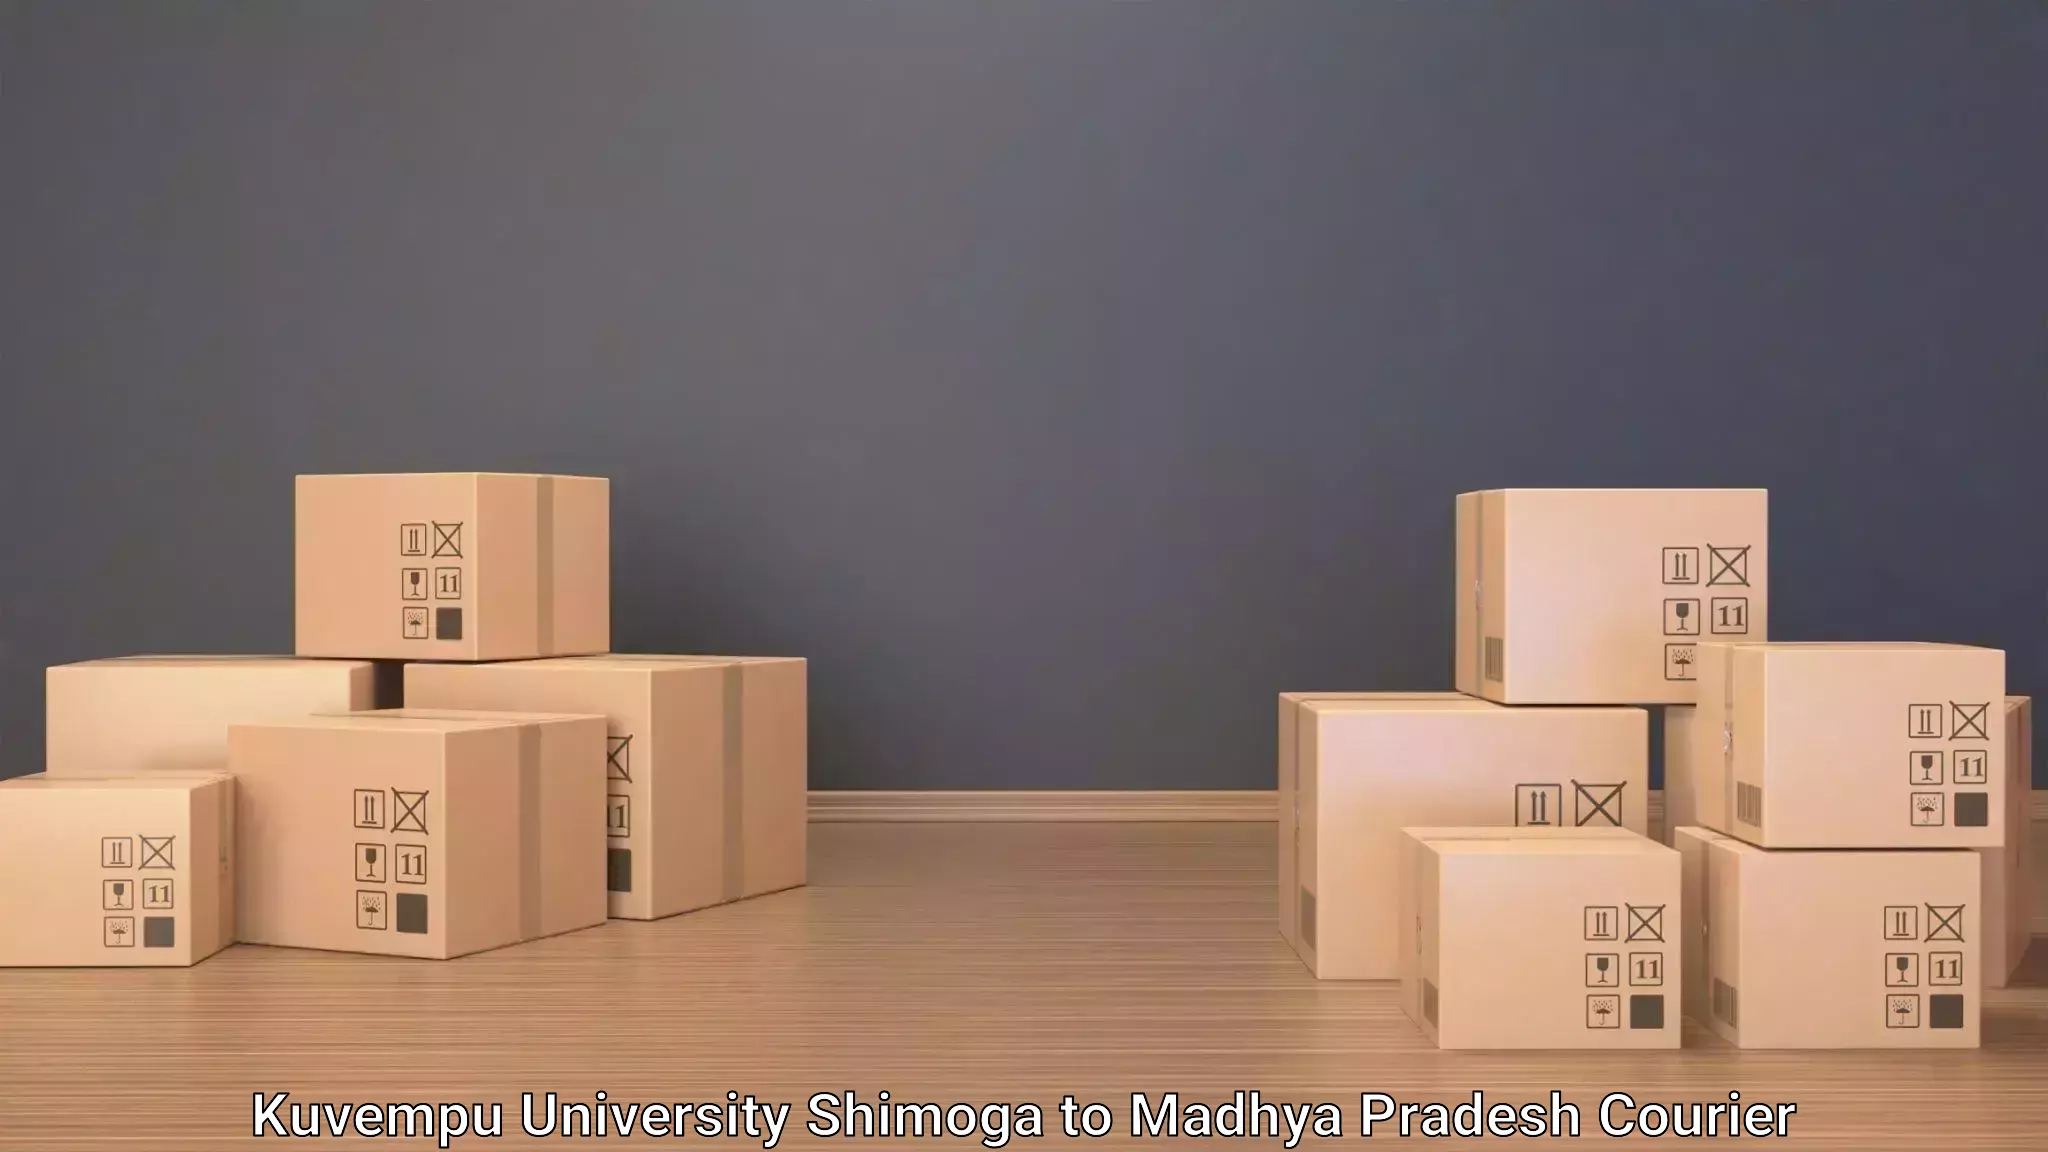 Luggage transport consulting Kuvempu University Shimoga to Gwalior